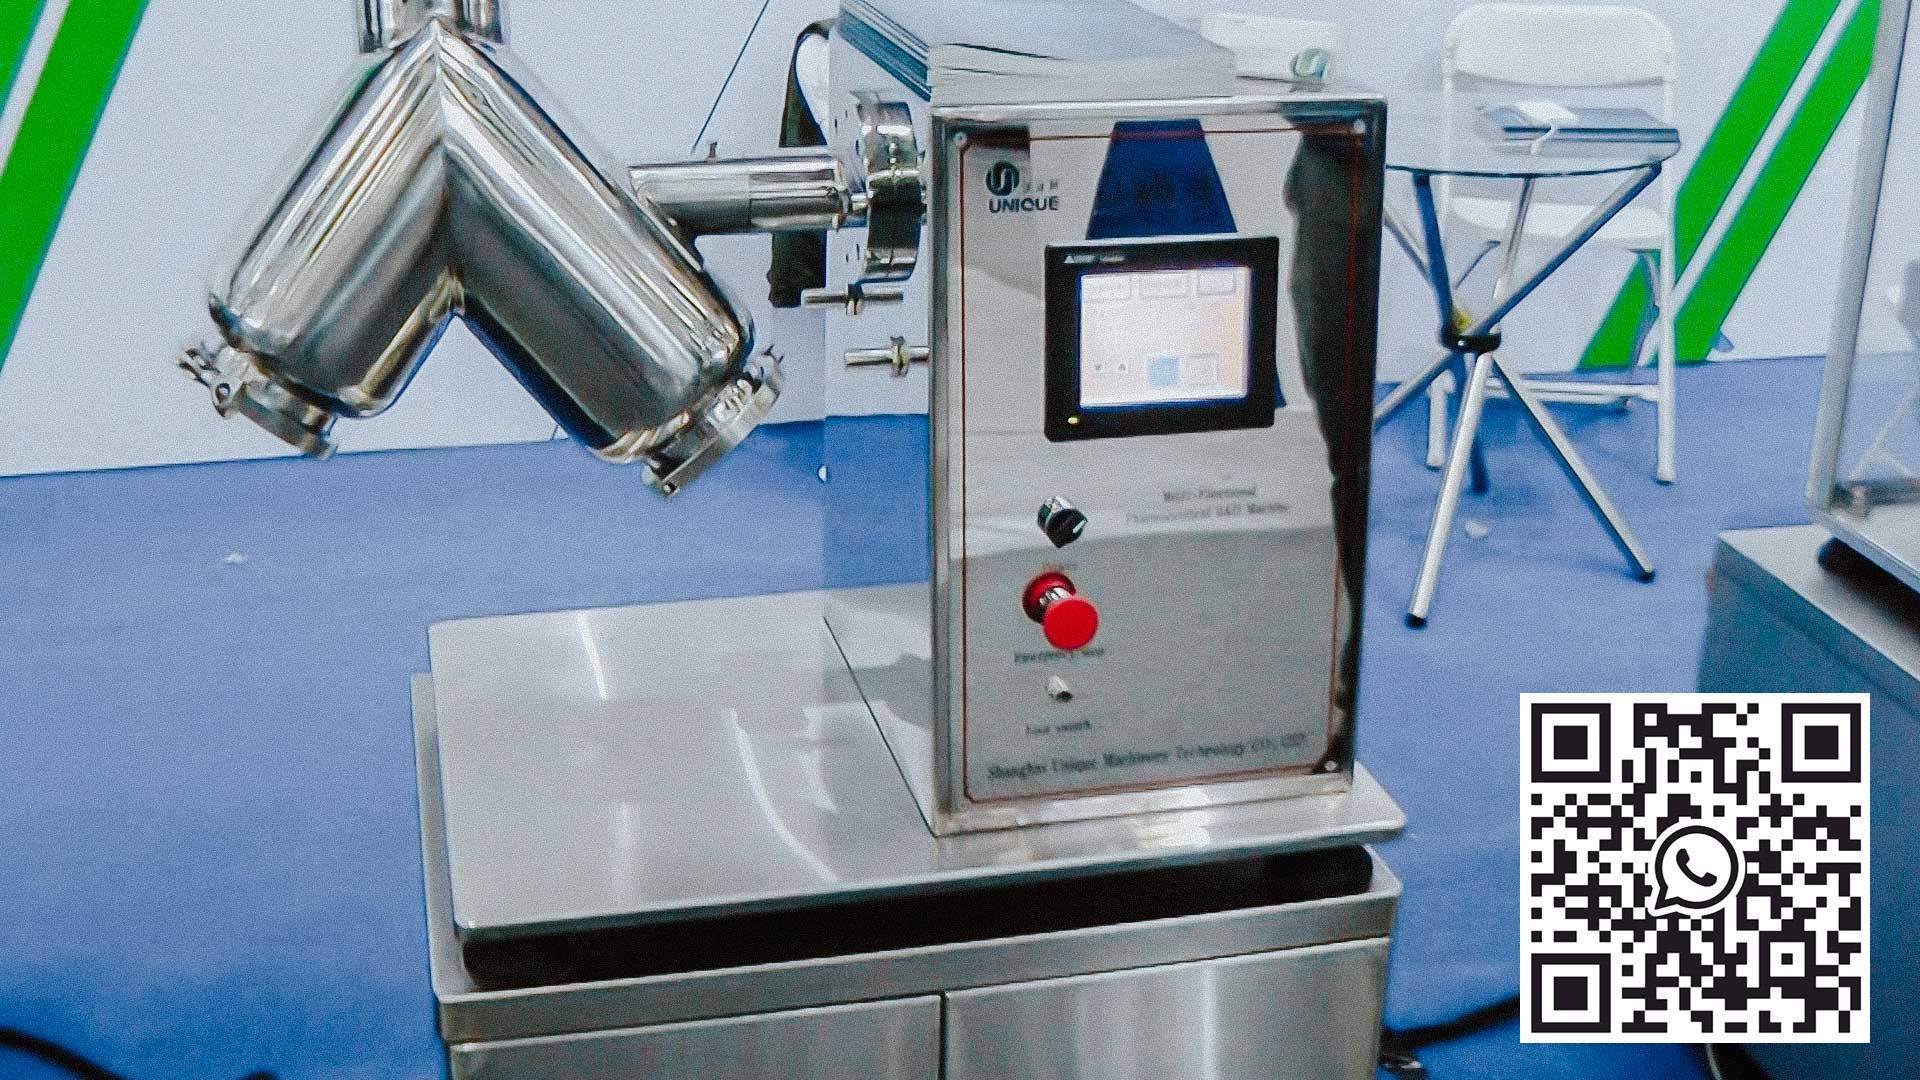 V-mixer untuk menyediakan campuran serbuk yang digunakan untuk pembuatan ubat